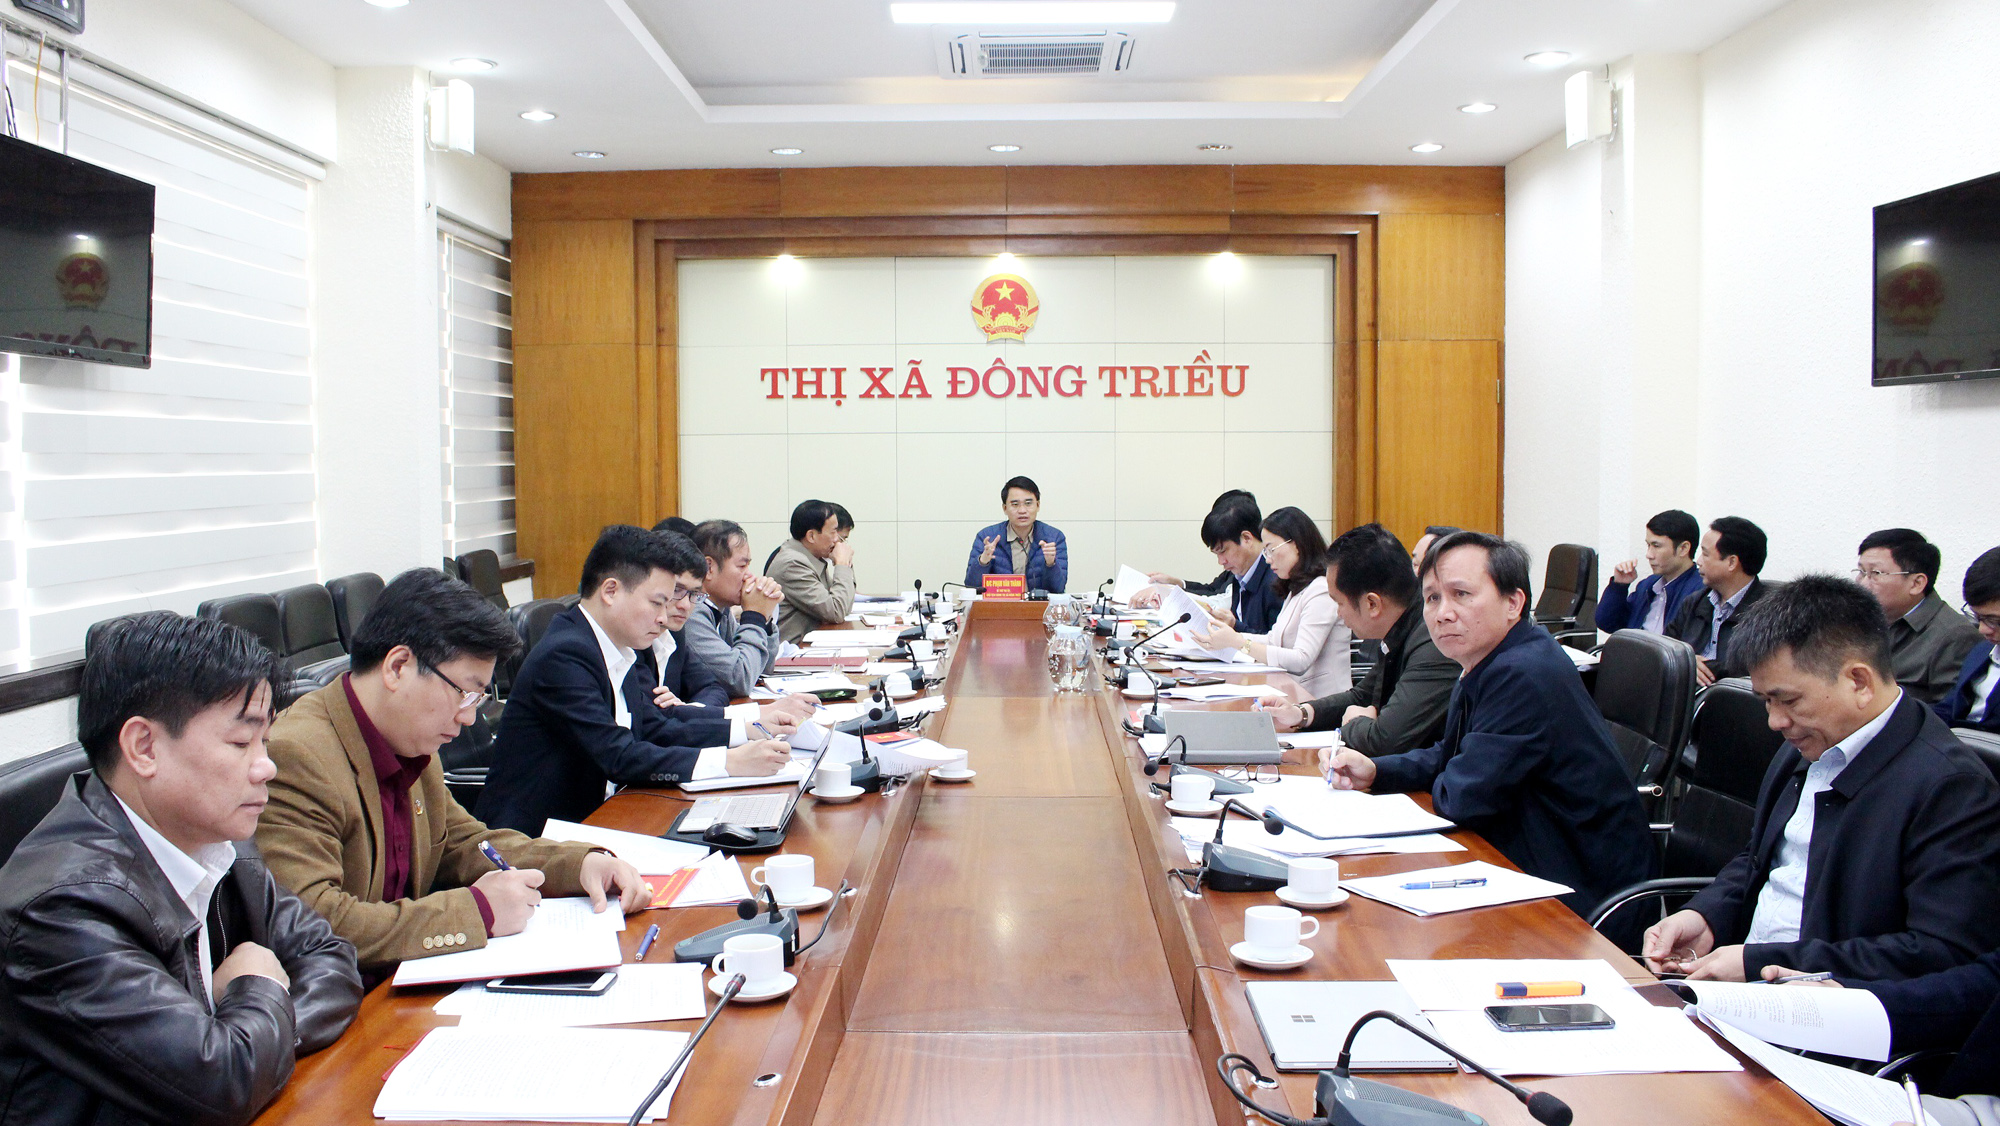 Thị ủy Đông Triều họp, định hướng các nhiệm vụ, giải pháp phát triển Đông Triều trong nhiệm kỳ 2020-2025.